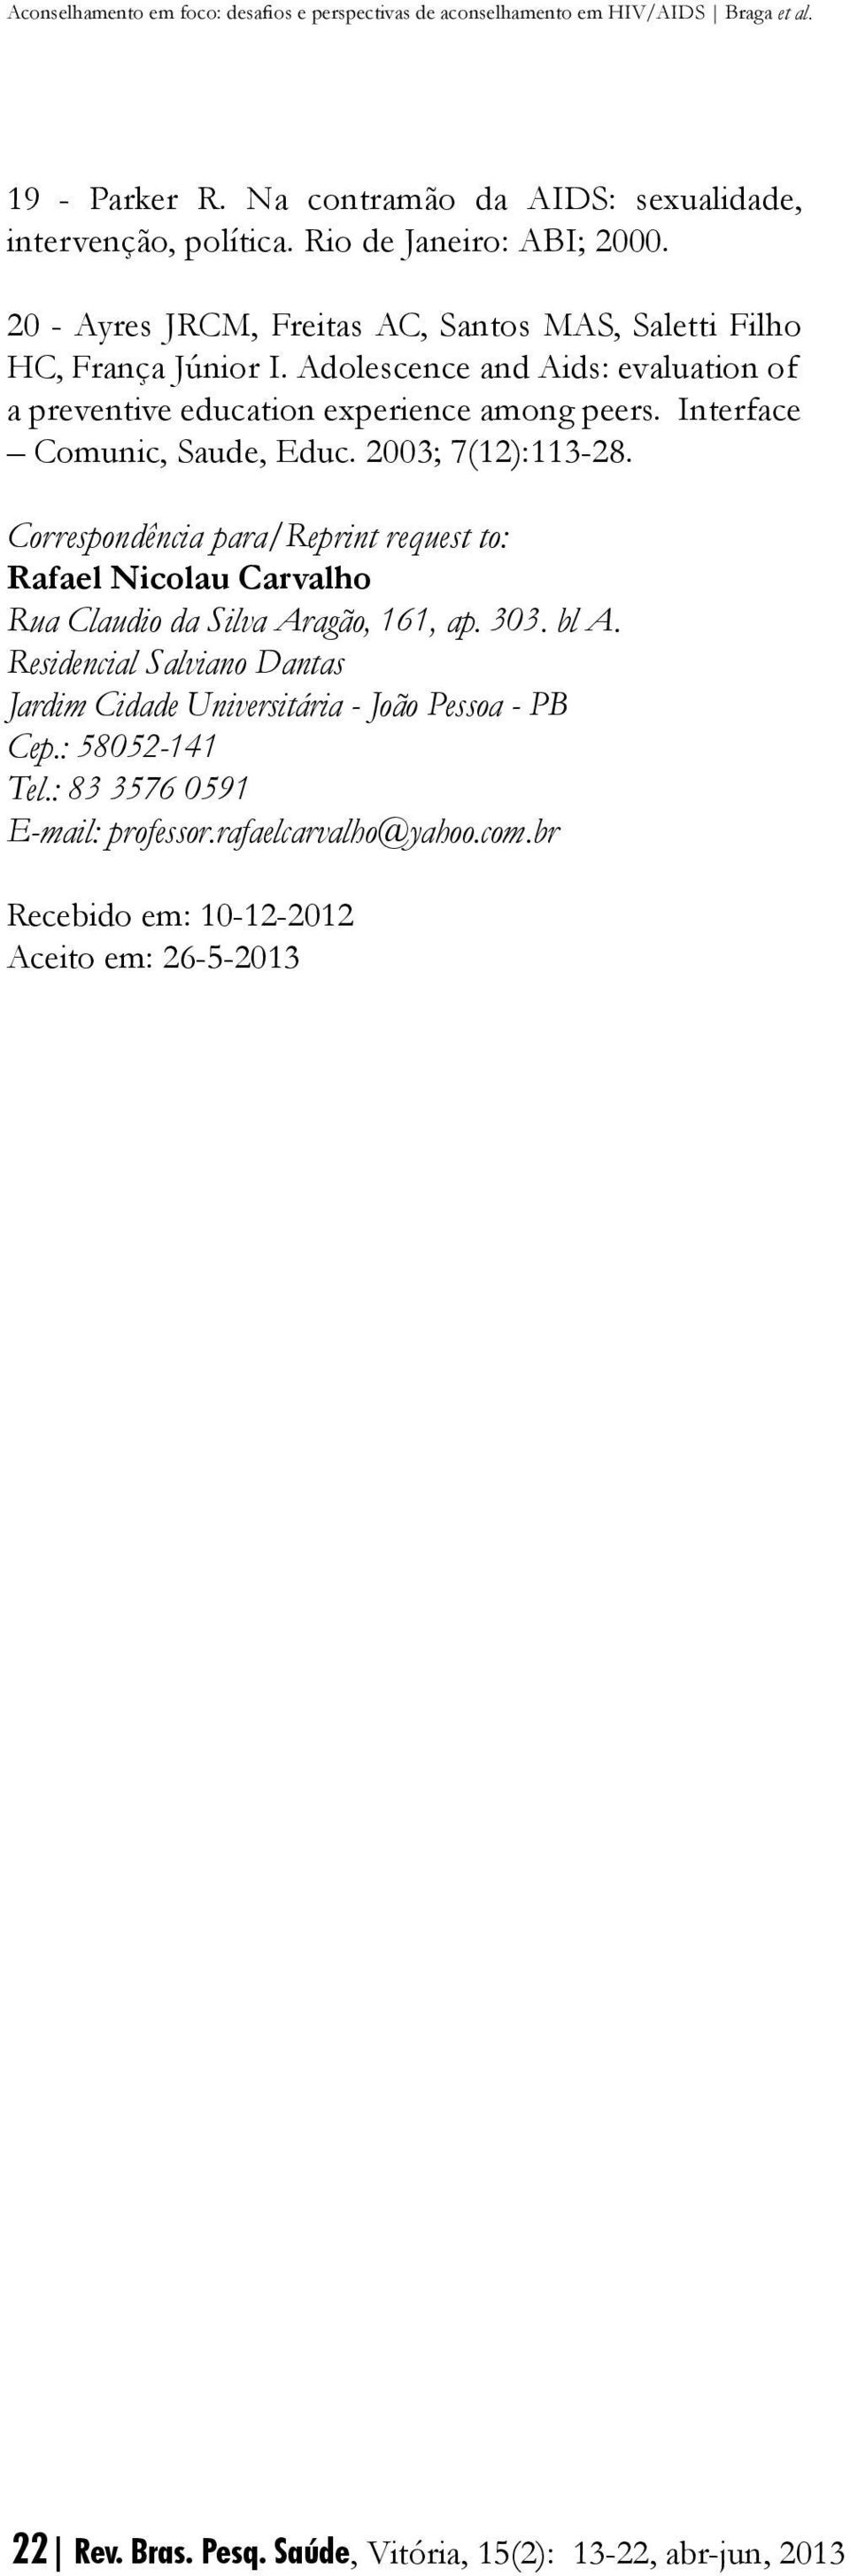 Interface Comunic, Saude, Educ. 2003; 7(12):113-28. Correspondência para/reprint request to: Rafael Nicolau Carvalho Rua Claudio da Silva Aragão, 161, ap. 303. bl A.